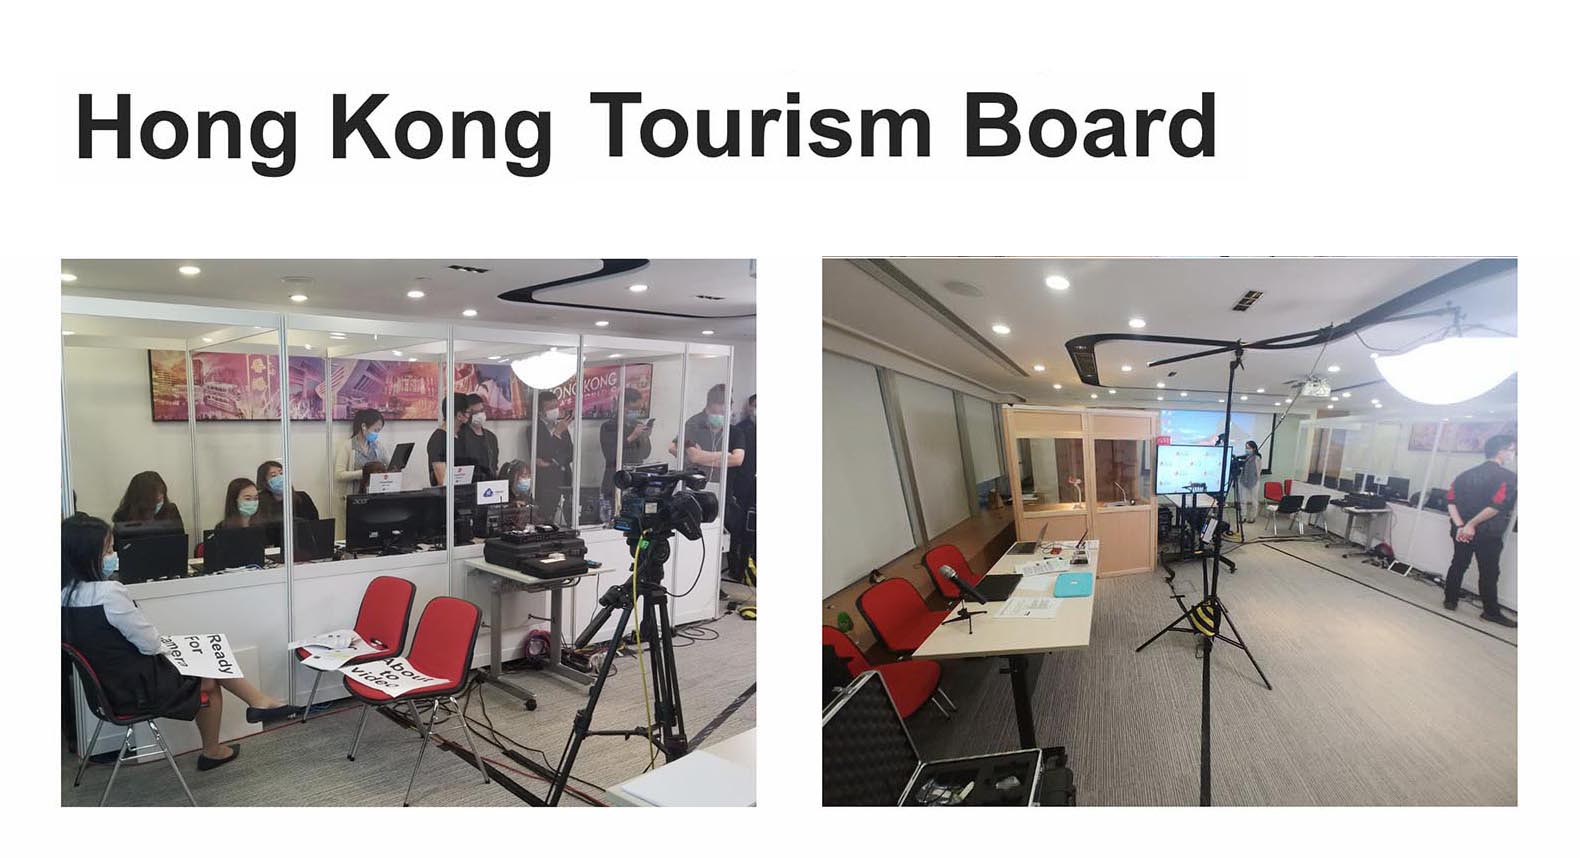 Hong Kong Tourismm Board